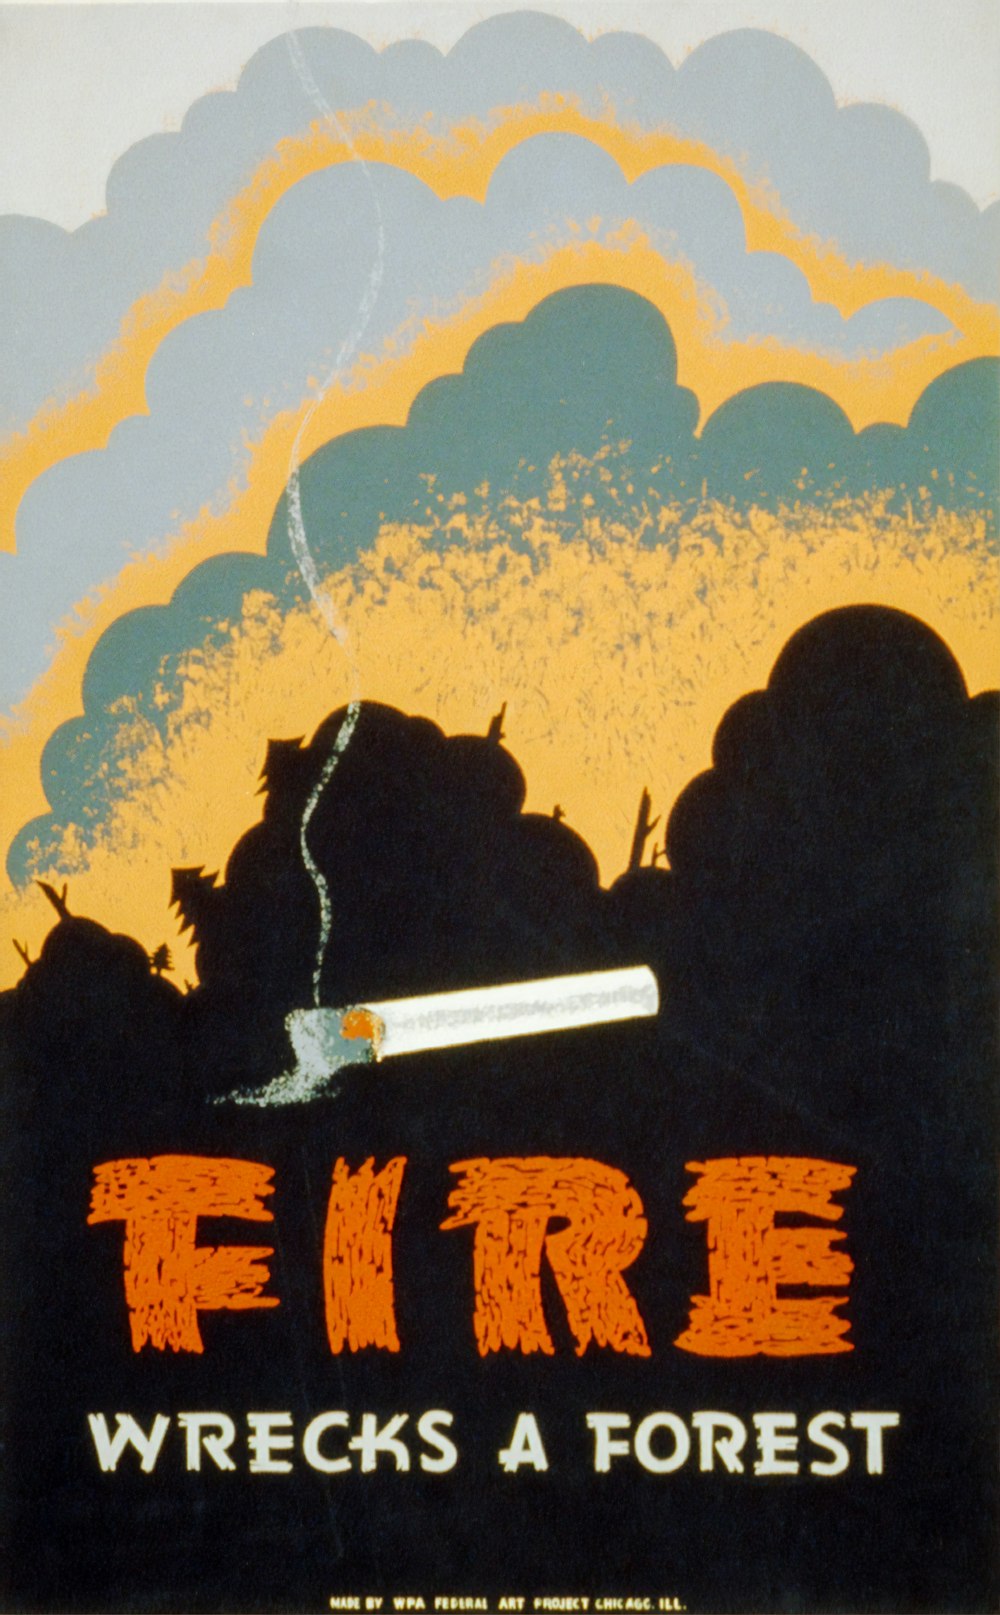 Un incendio destruye un bosque, póster de WPA